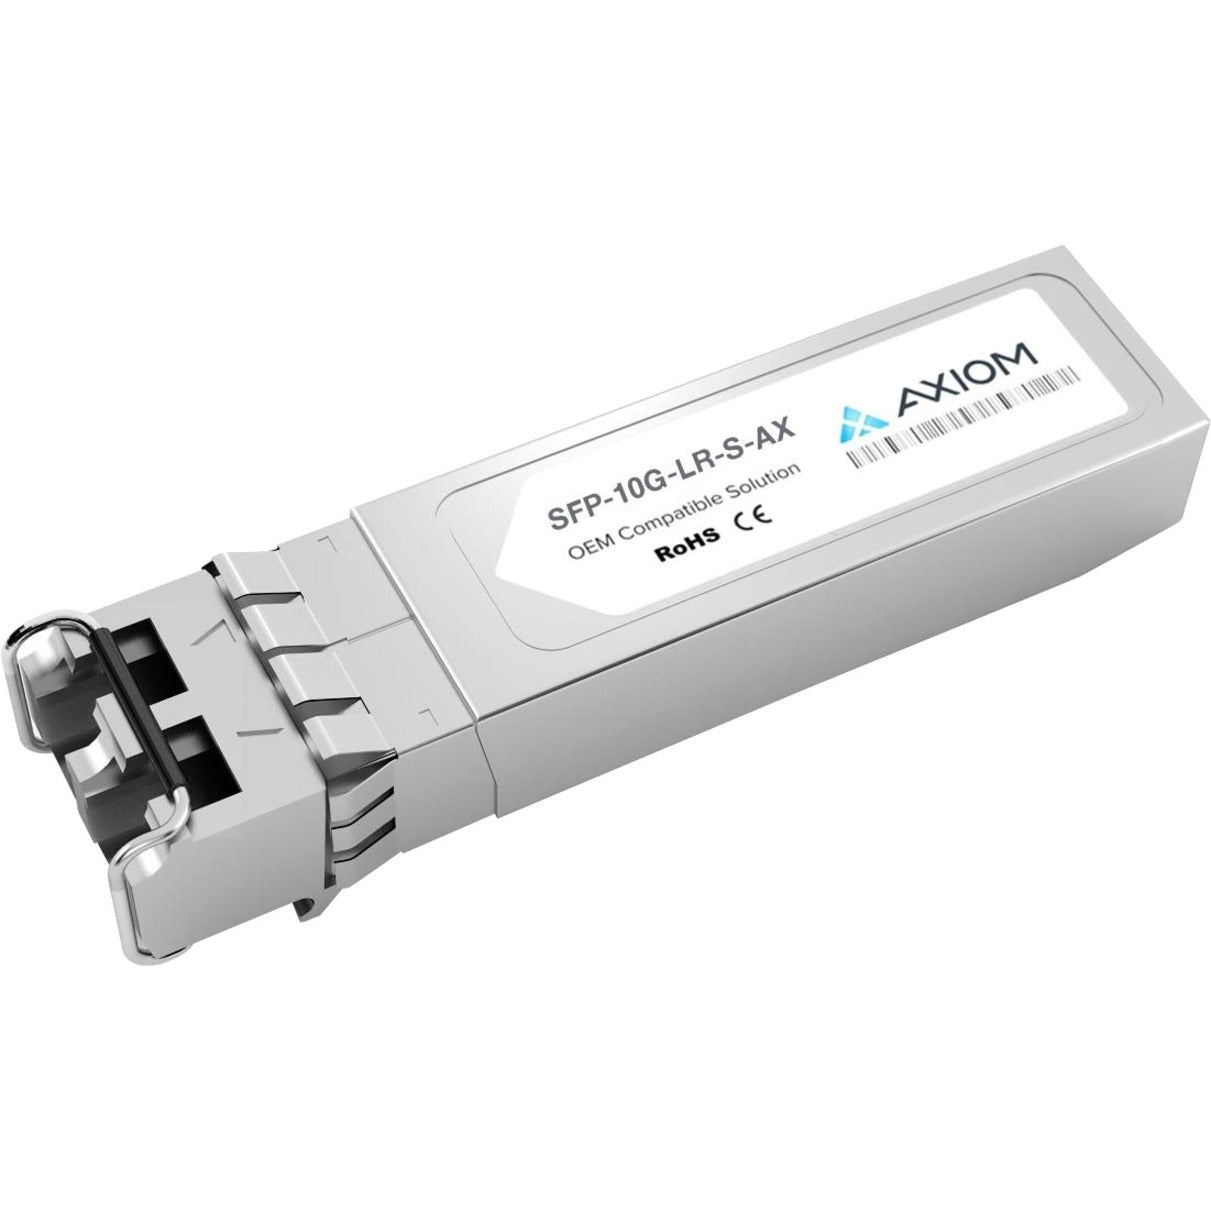 Axiom SFP-10G-LR-S-AX 10GBASE-LR SFP+ Transceiver for Cisco, Single-mode, 10 Gigabit Ethernet